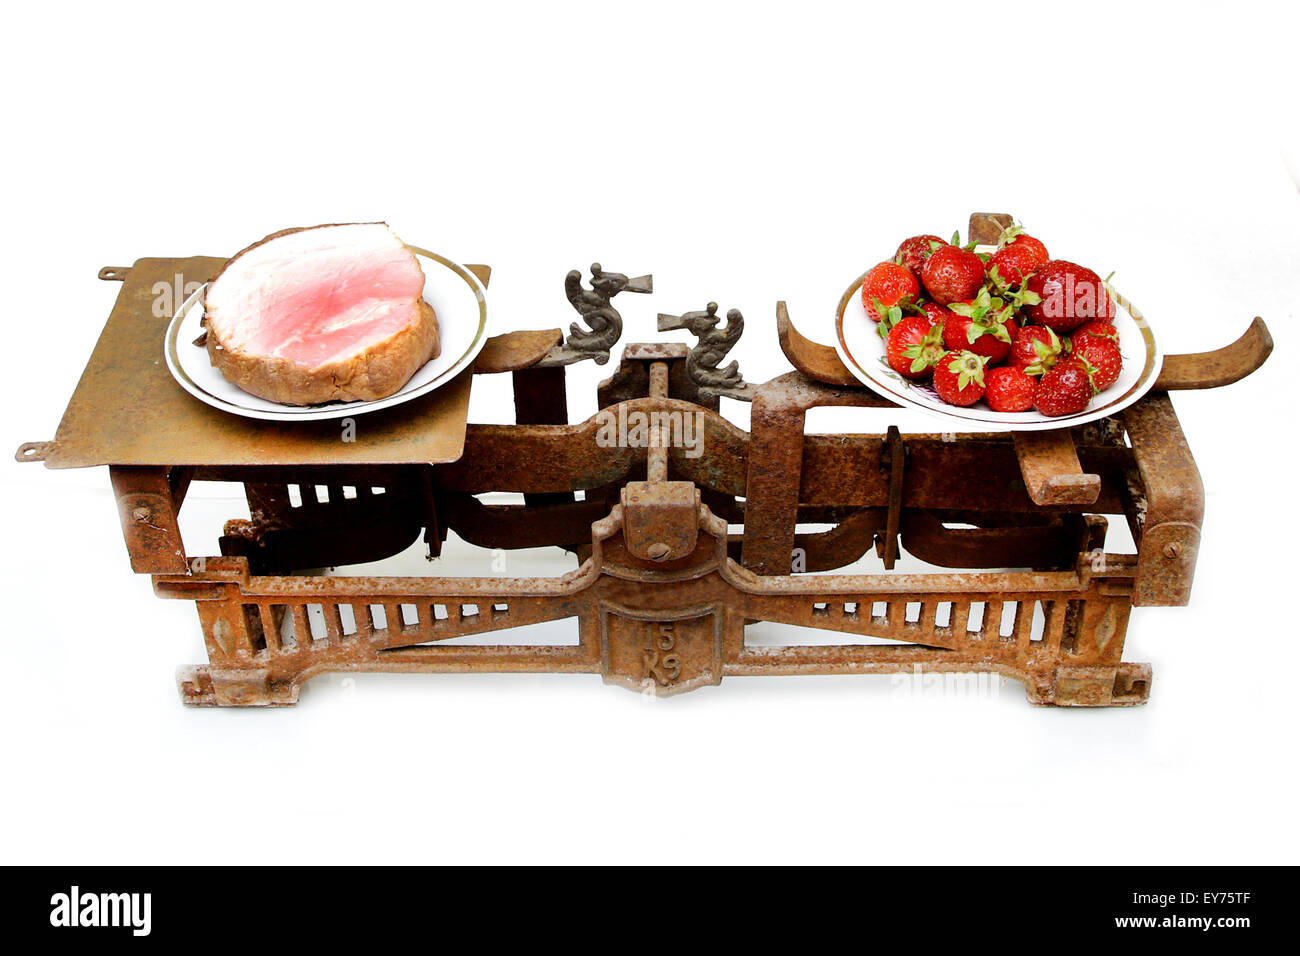 Fragole e prosciutto grasso su diverse tazze di scale vintage che mostra il cibo sano prima importante che la carne di maiale Foto Stock